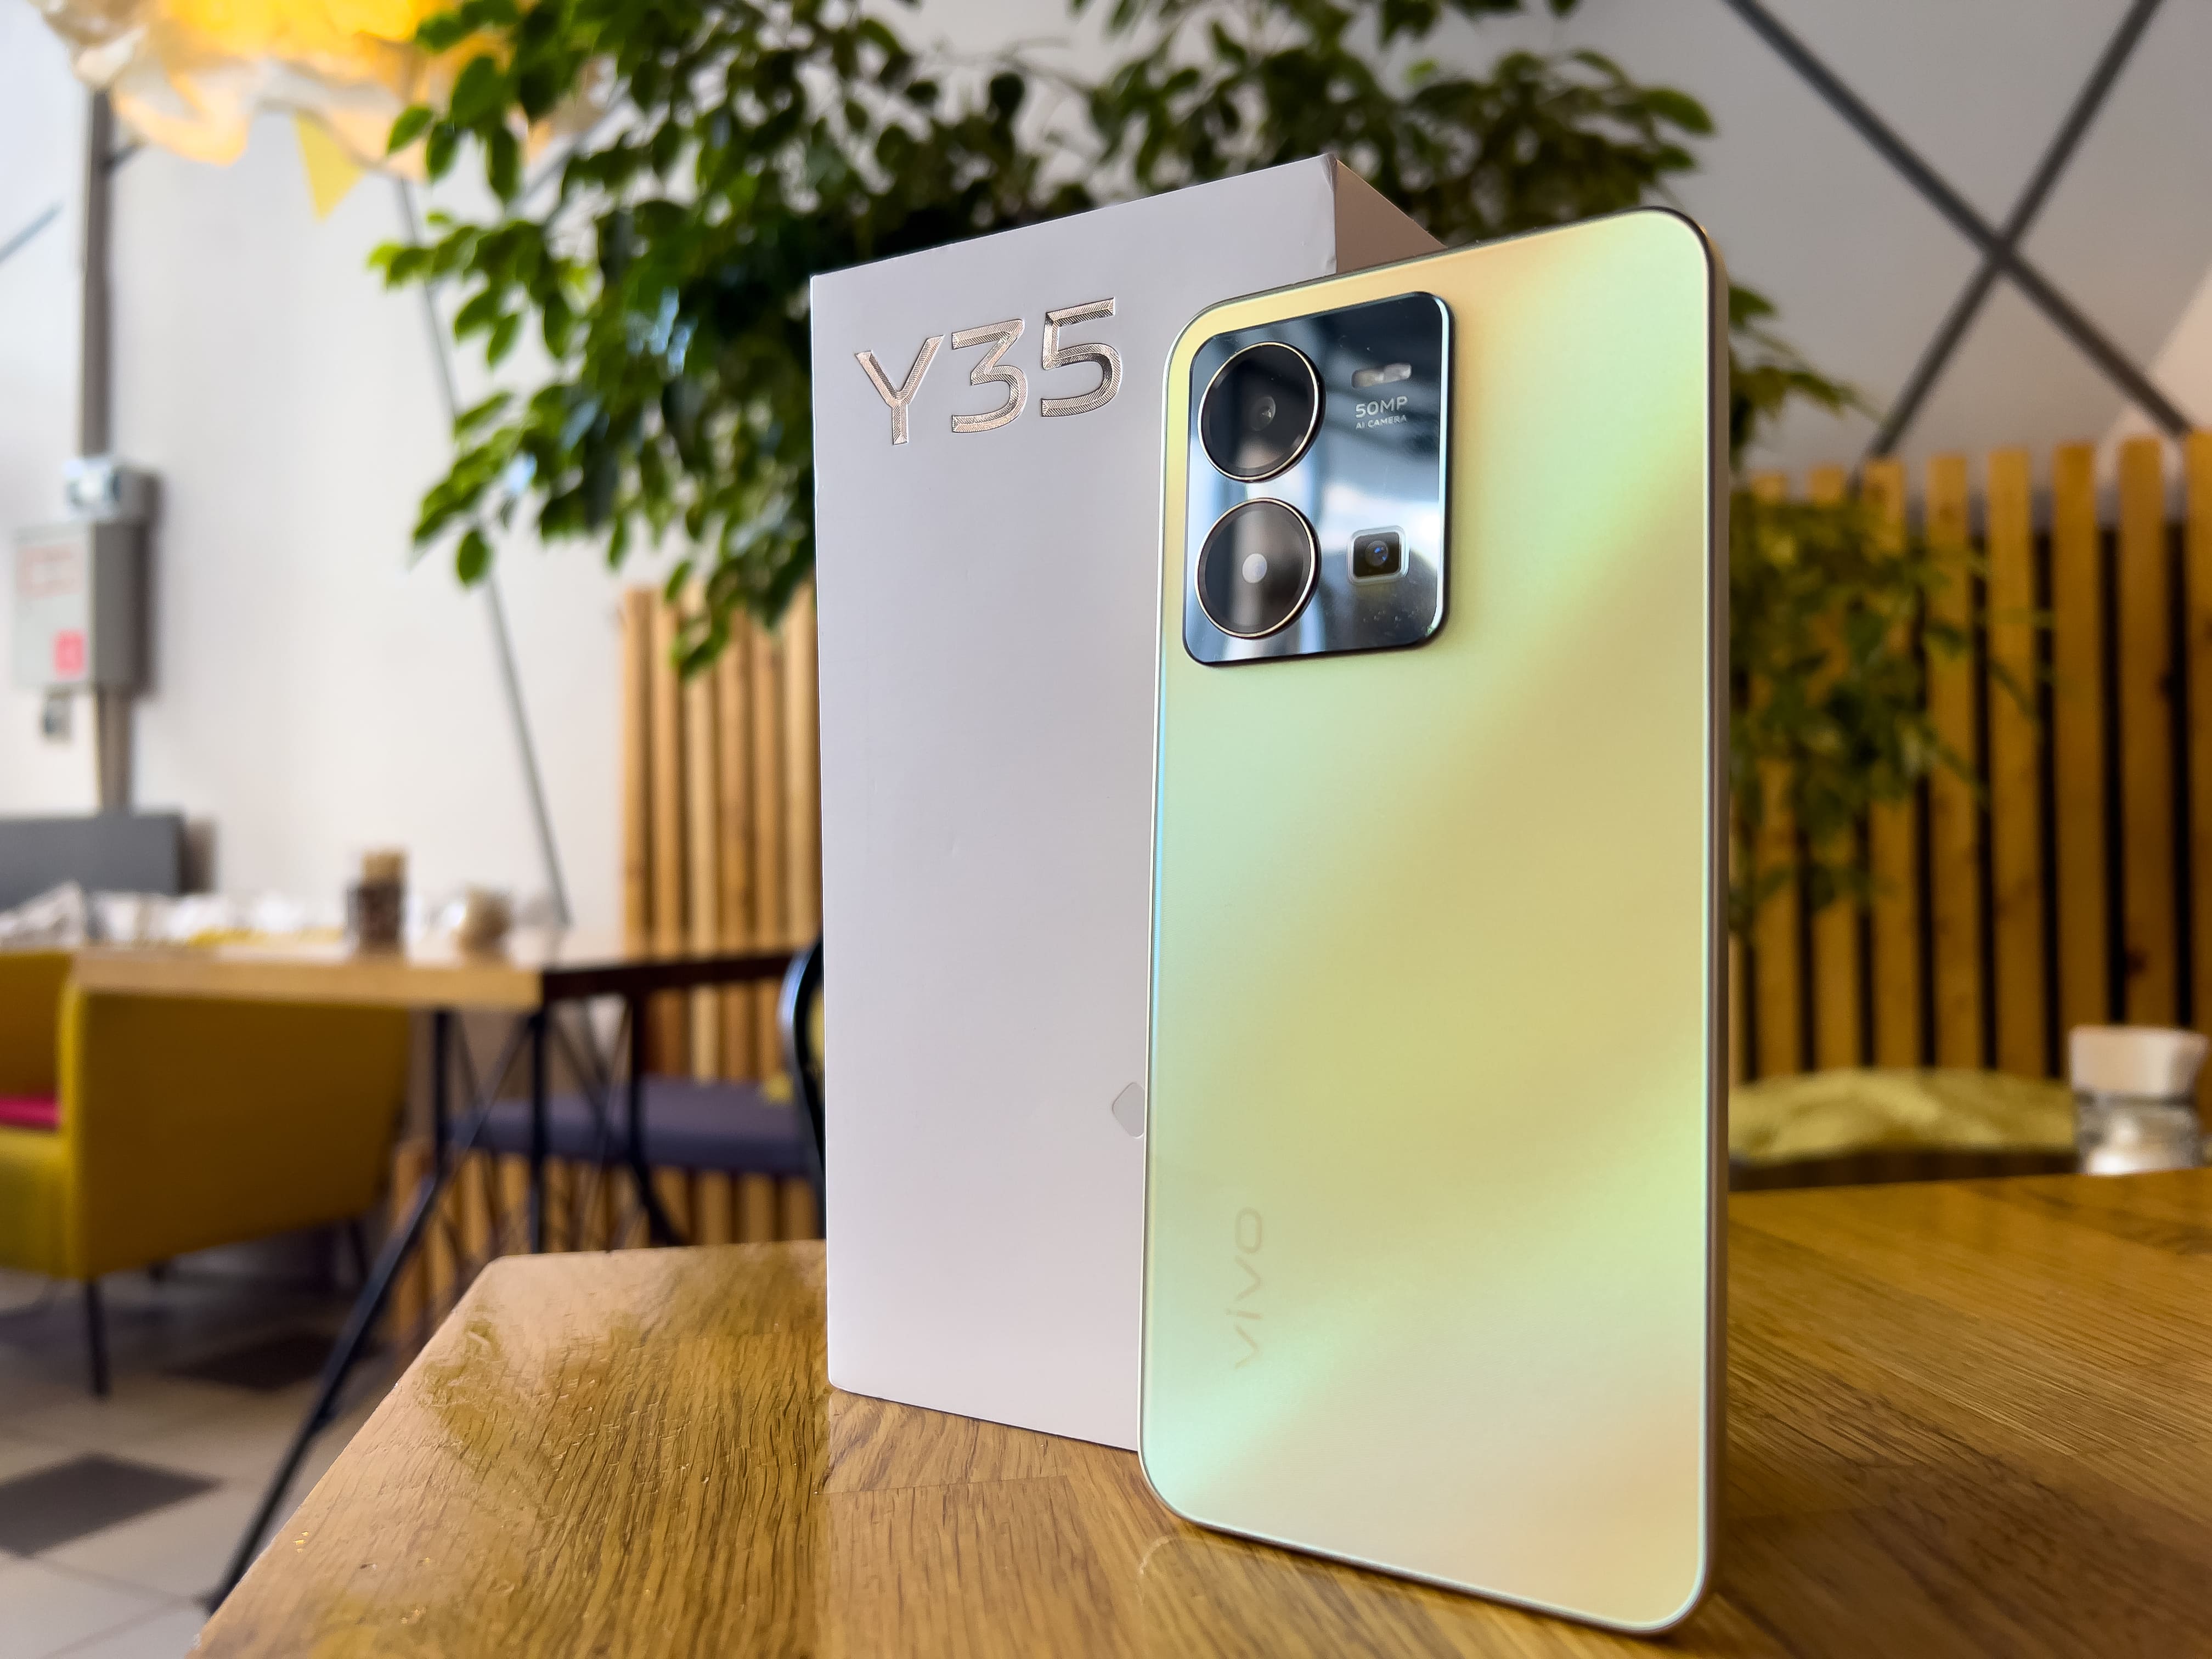 Обзор смартфона Vivo Y35: достойный аппарат по очень приятной цене